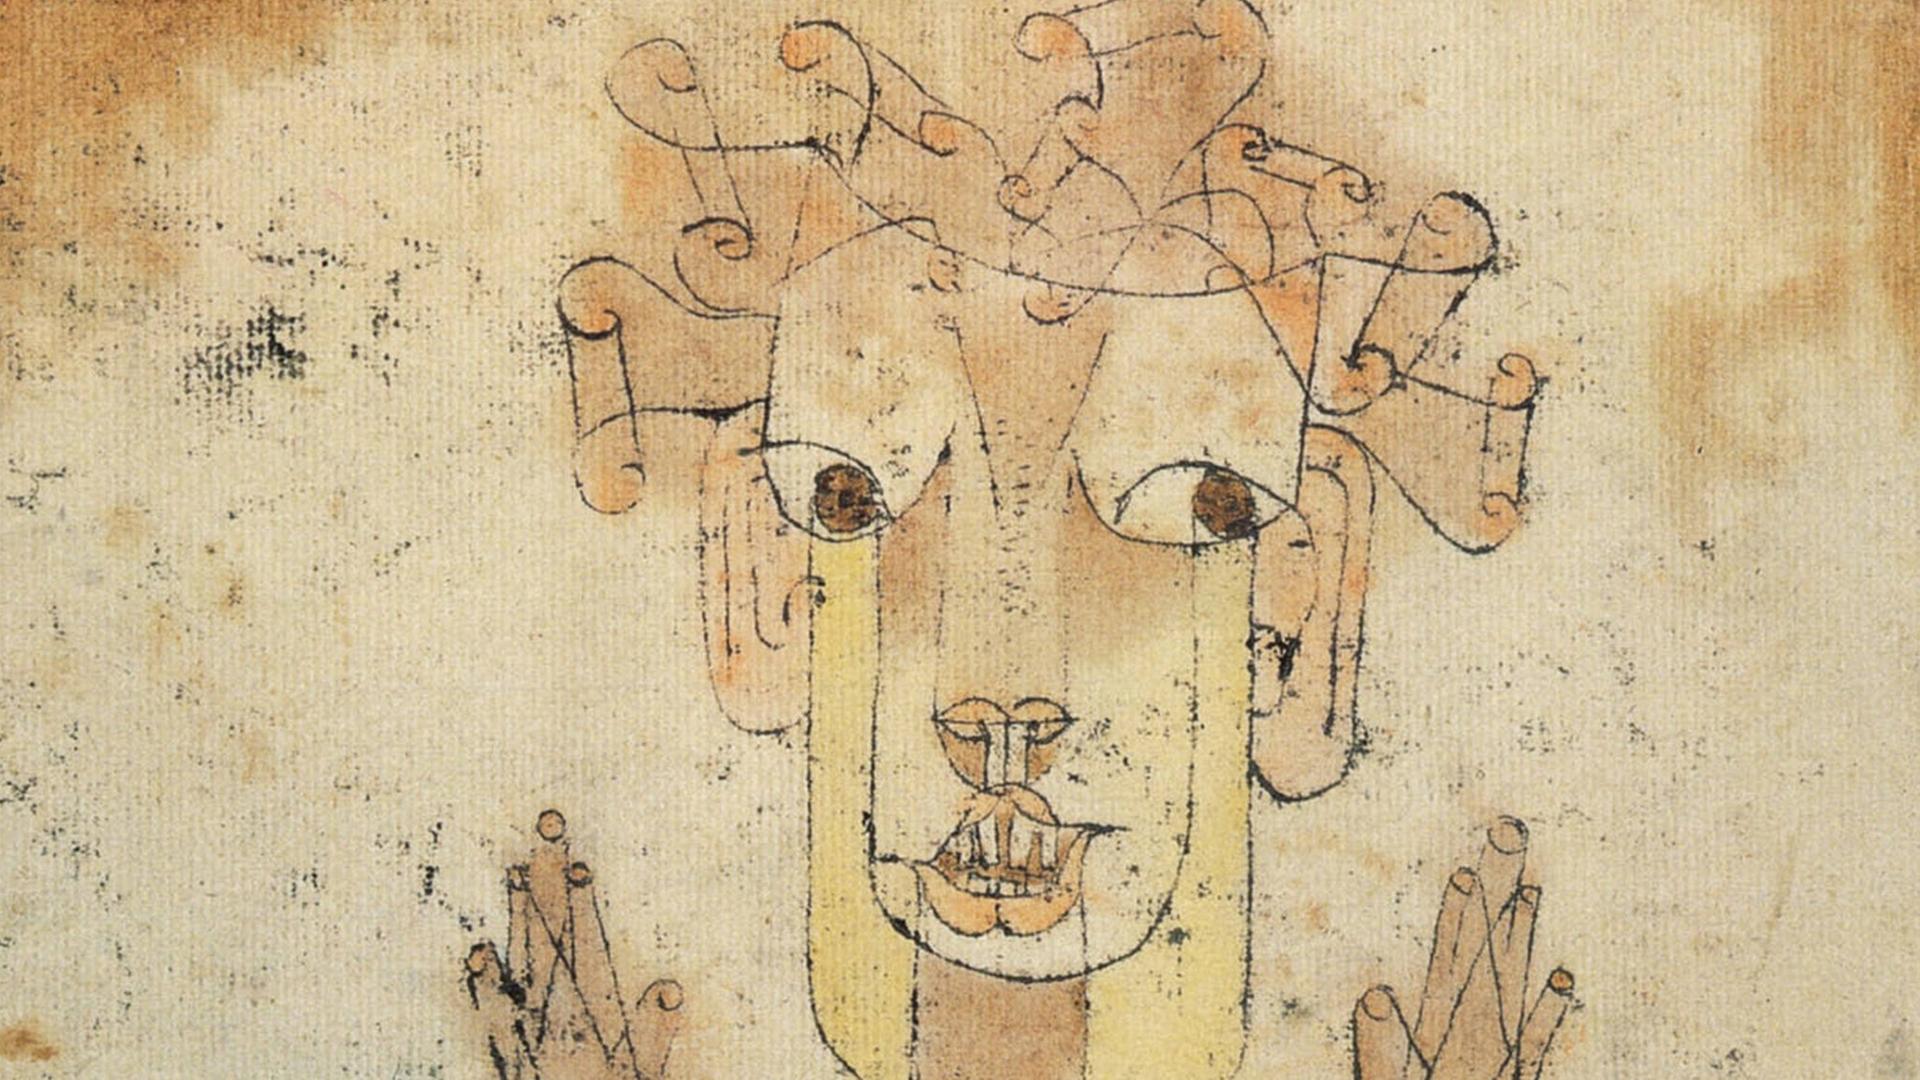 Paul Klees Zeichnung "Angelus Novus" zeigt in Tusche und Ölkreide auf bräunlichem Papier eine geflügelte Figur mit aufgerissenen Augen und Mund.